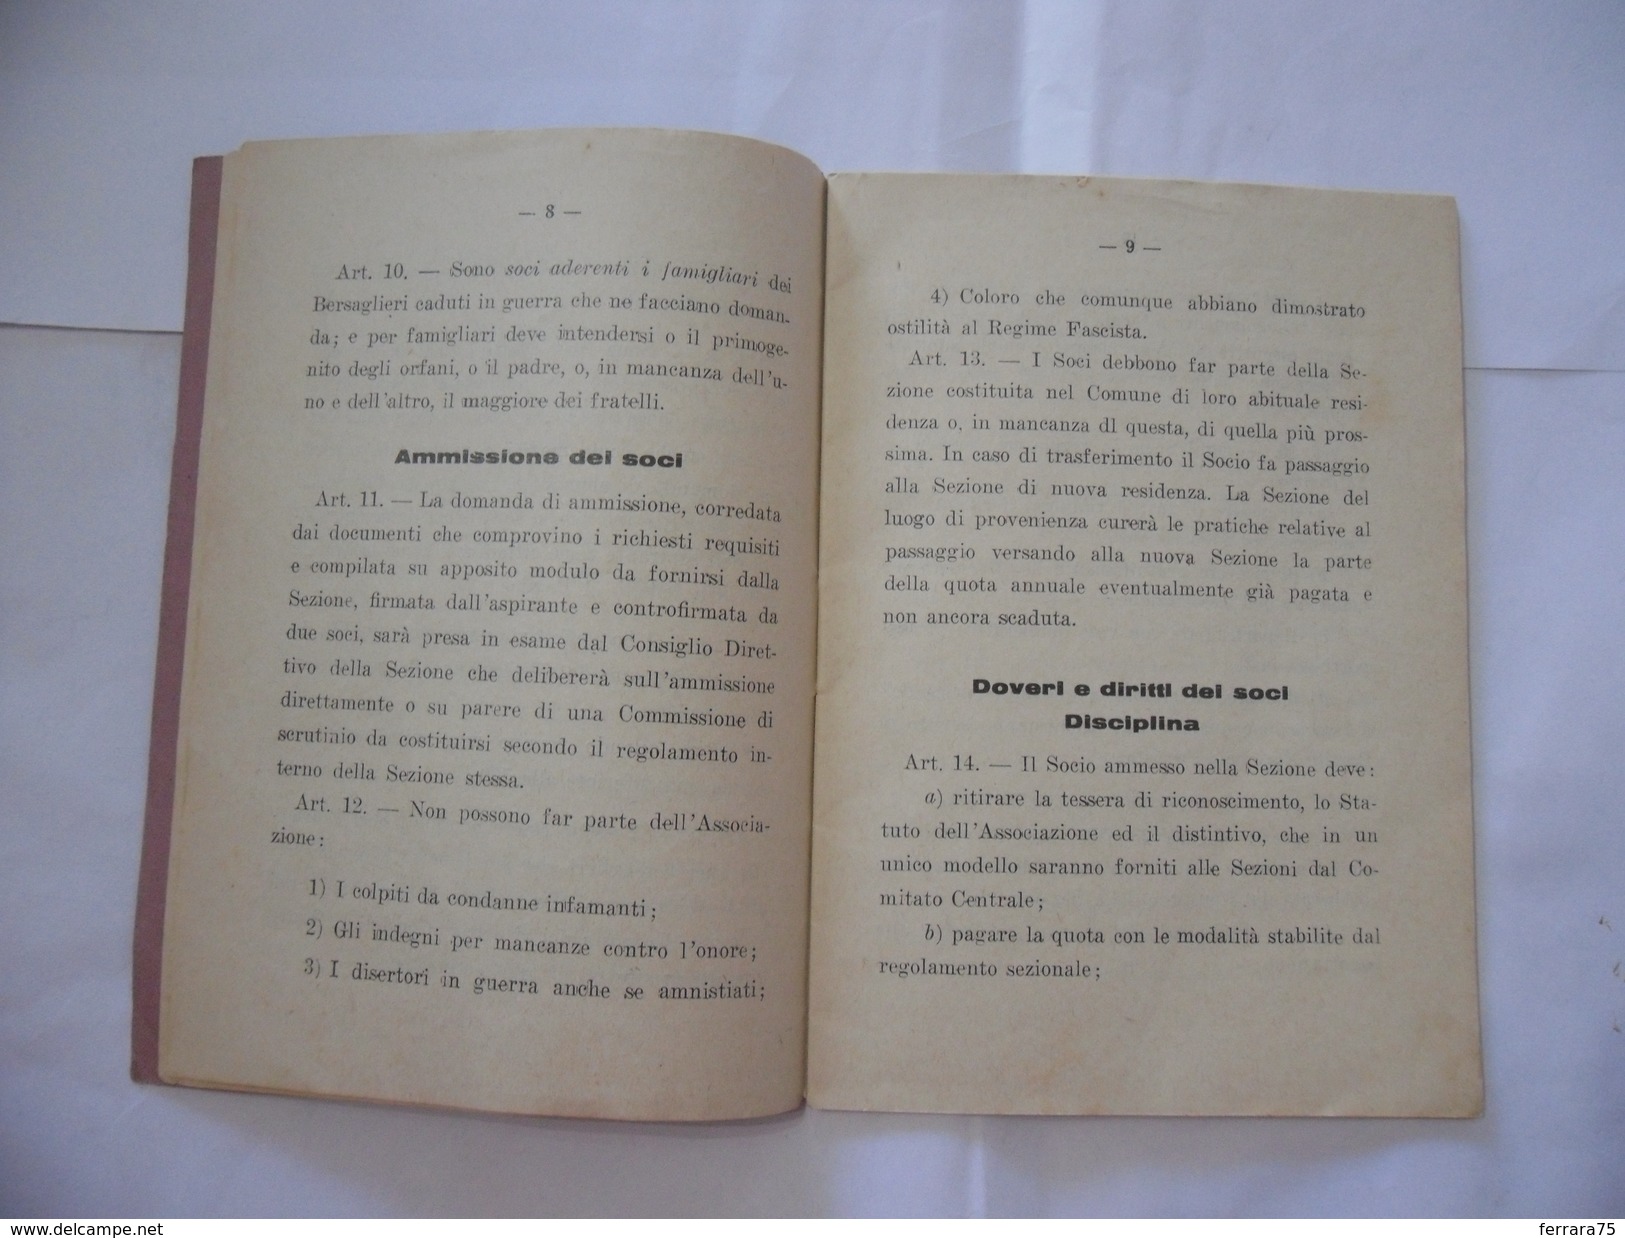 WW2 LIBRETTO STATUTO ASSOCIAZIONE NAZIONALE BERSAGLIERI 1933. - Italian